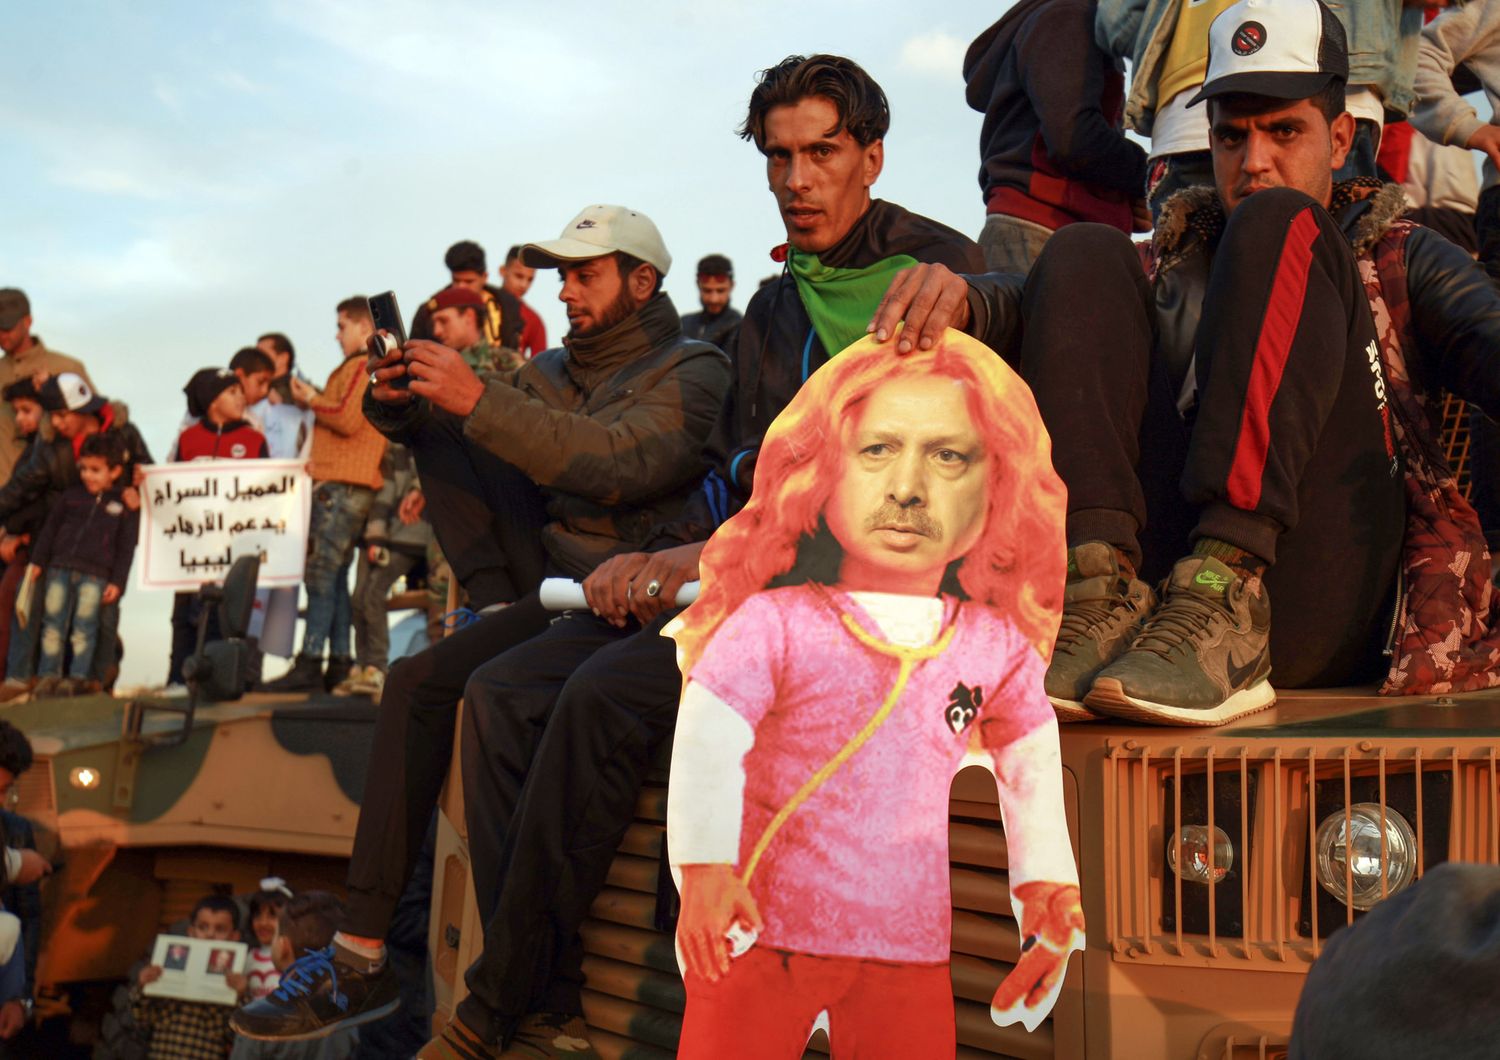 Sostenitori del generale Haftar manifestano contro Erdogan in Libia